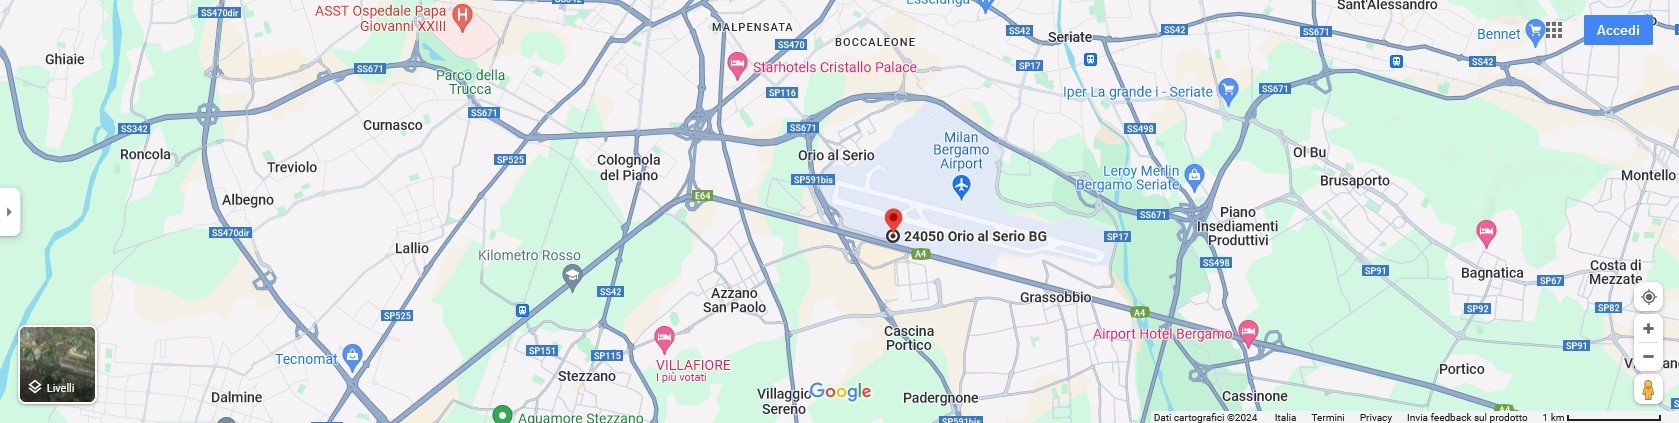 mappa interattiva ciclabile-aeroporto-stazione-bg